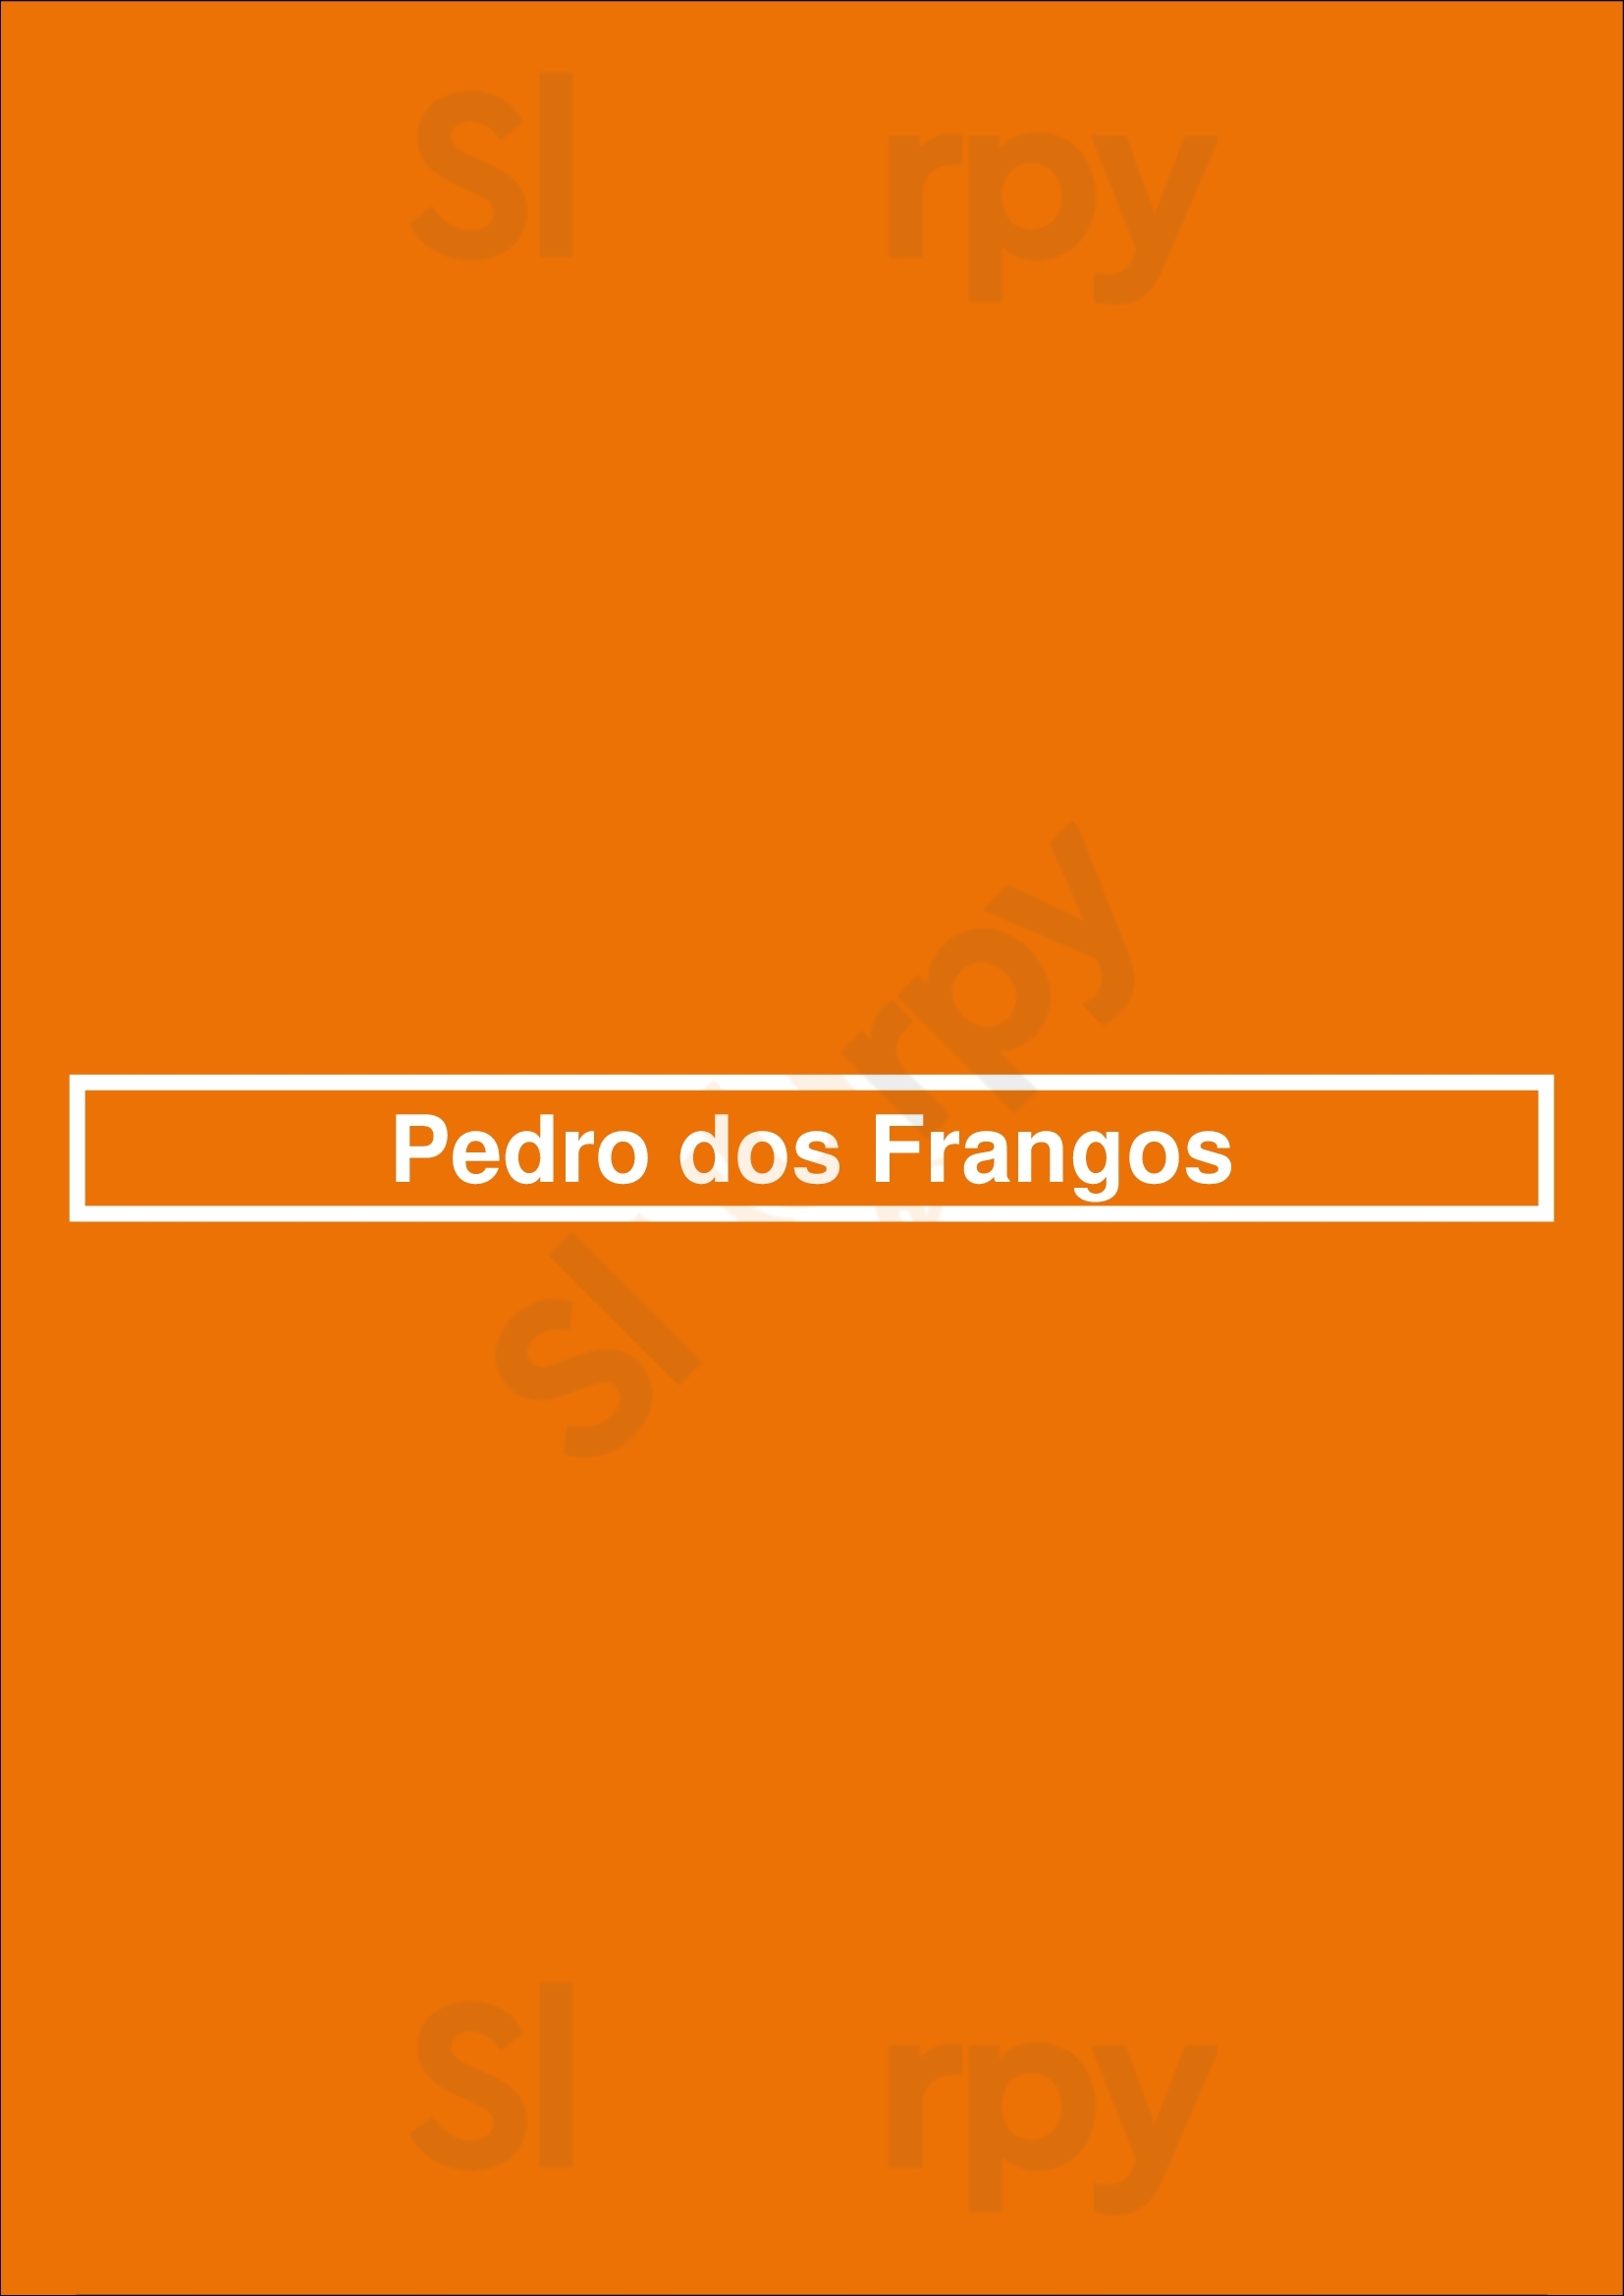 Pedro Dos Frangos Porto Menu - 1